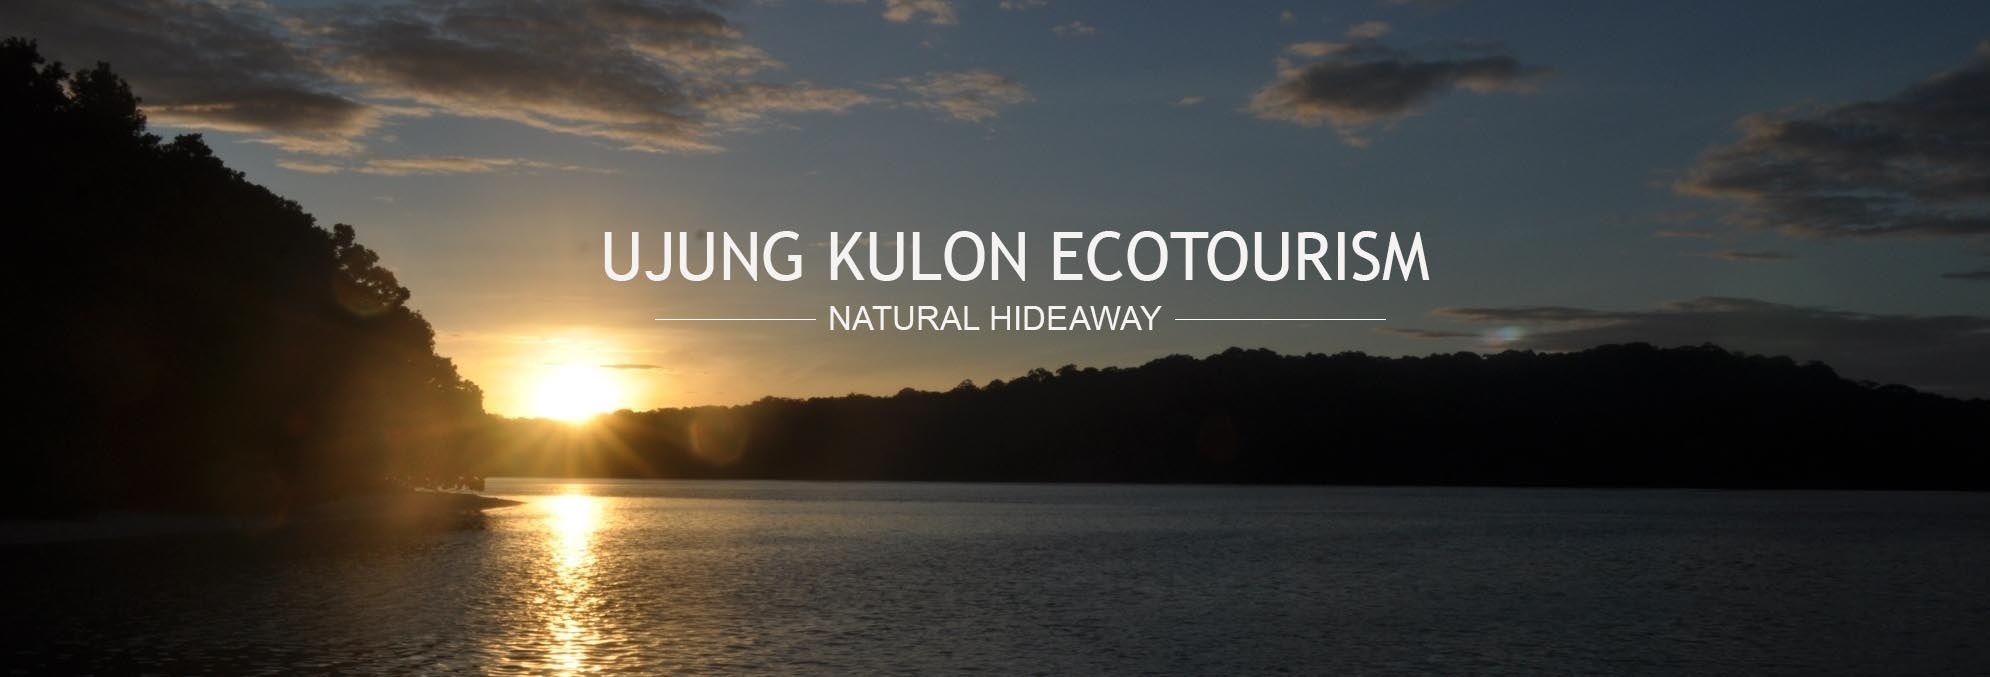 Ujung Kulon Ecotourism